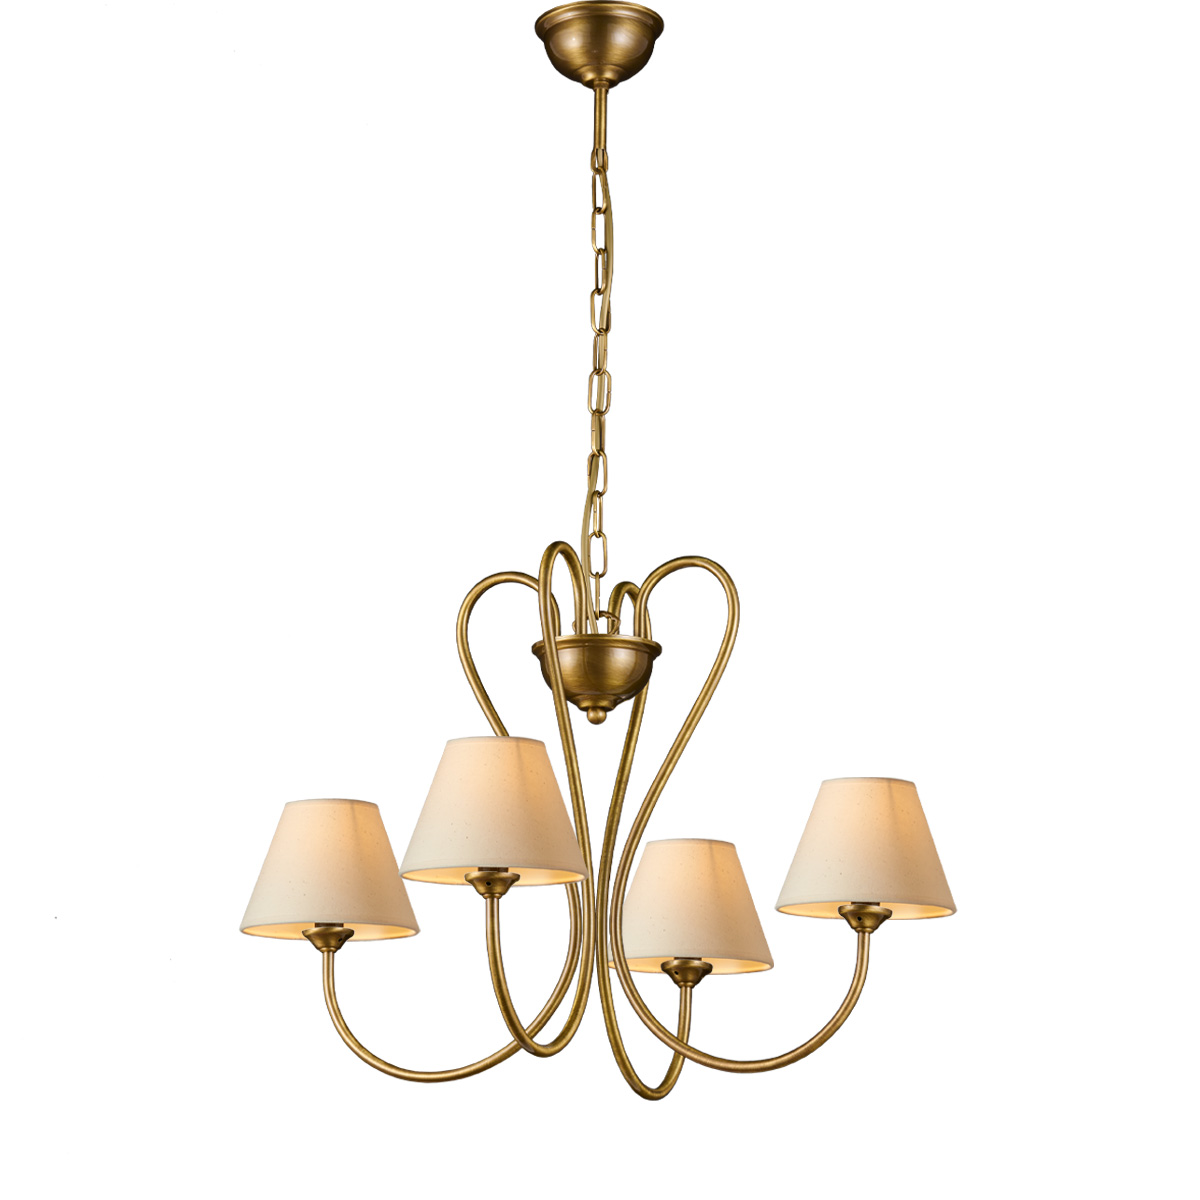 Ορειχάλκινο φωτιστικό με καπέλα ΝΑΞΟΣ-1 brass chandelier with lamp shades